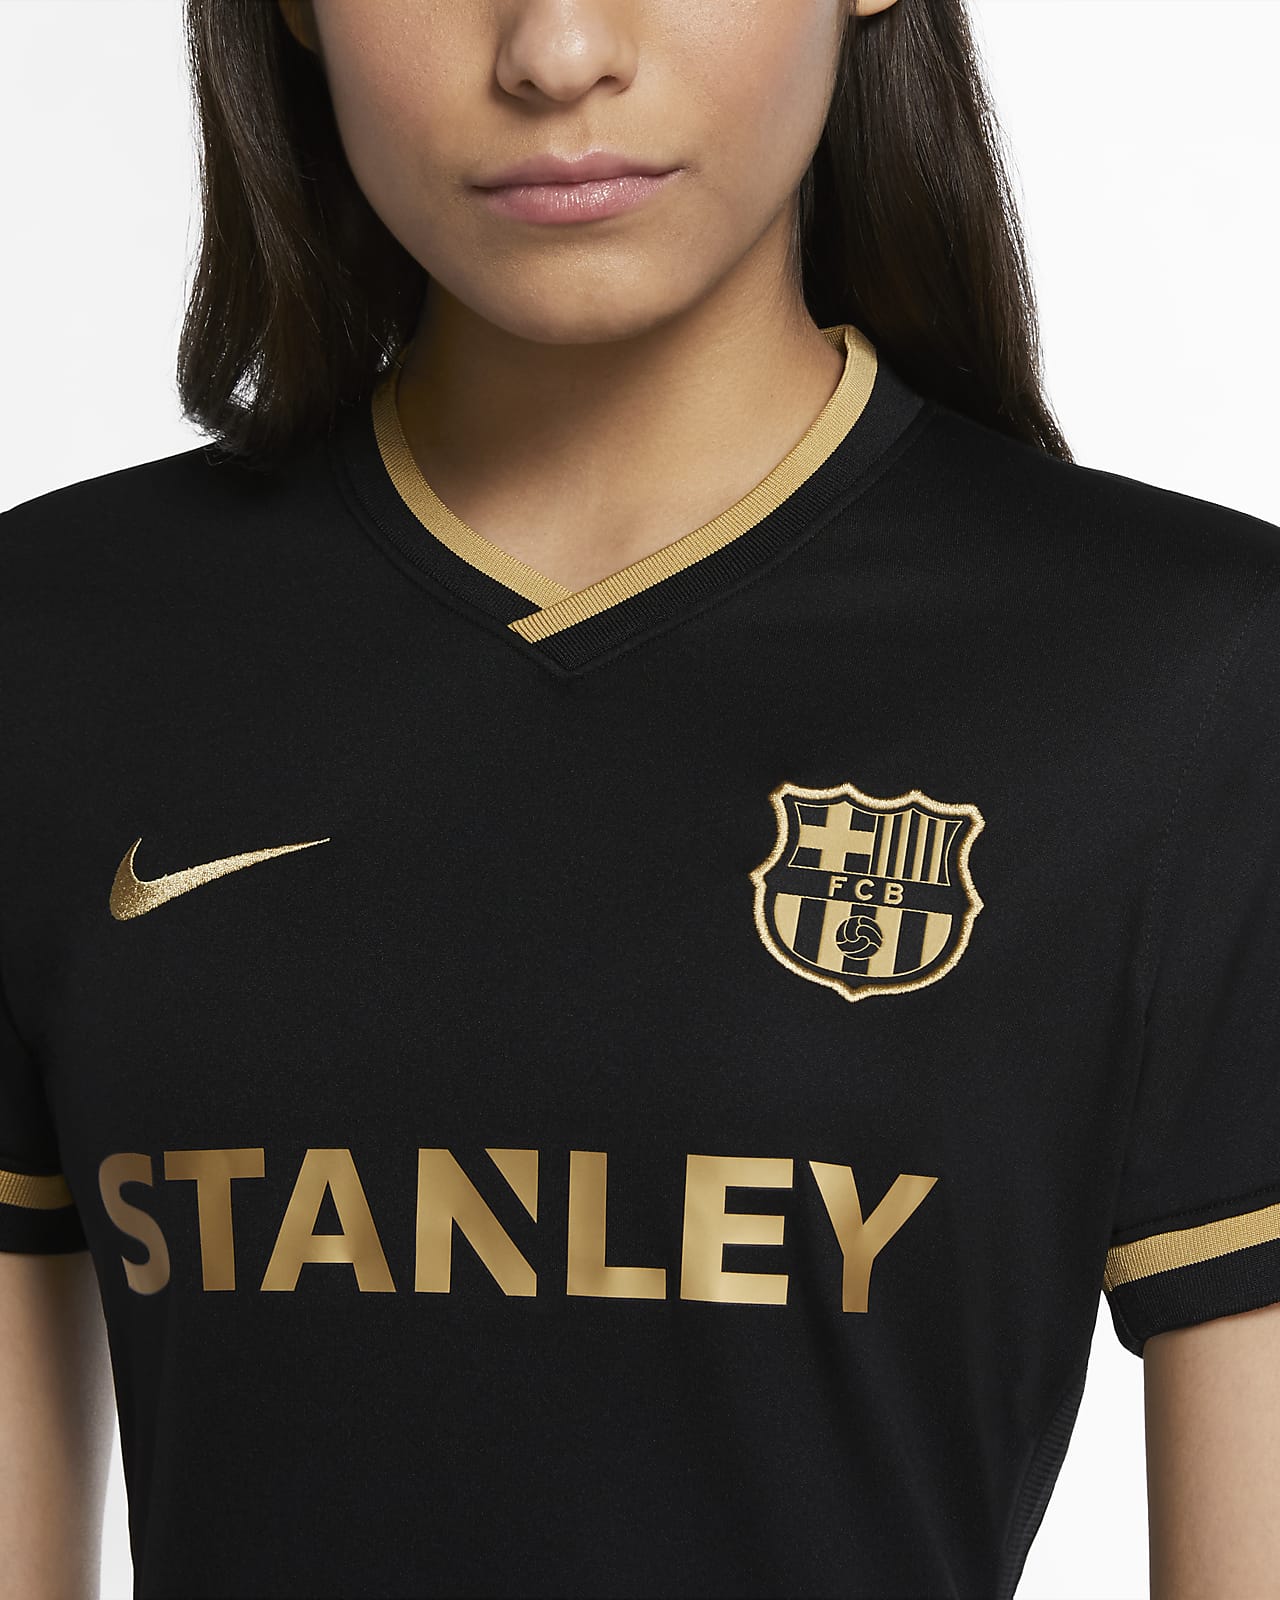 fc barcelona women's jersey